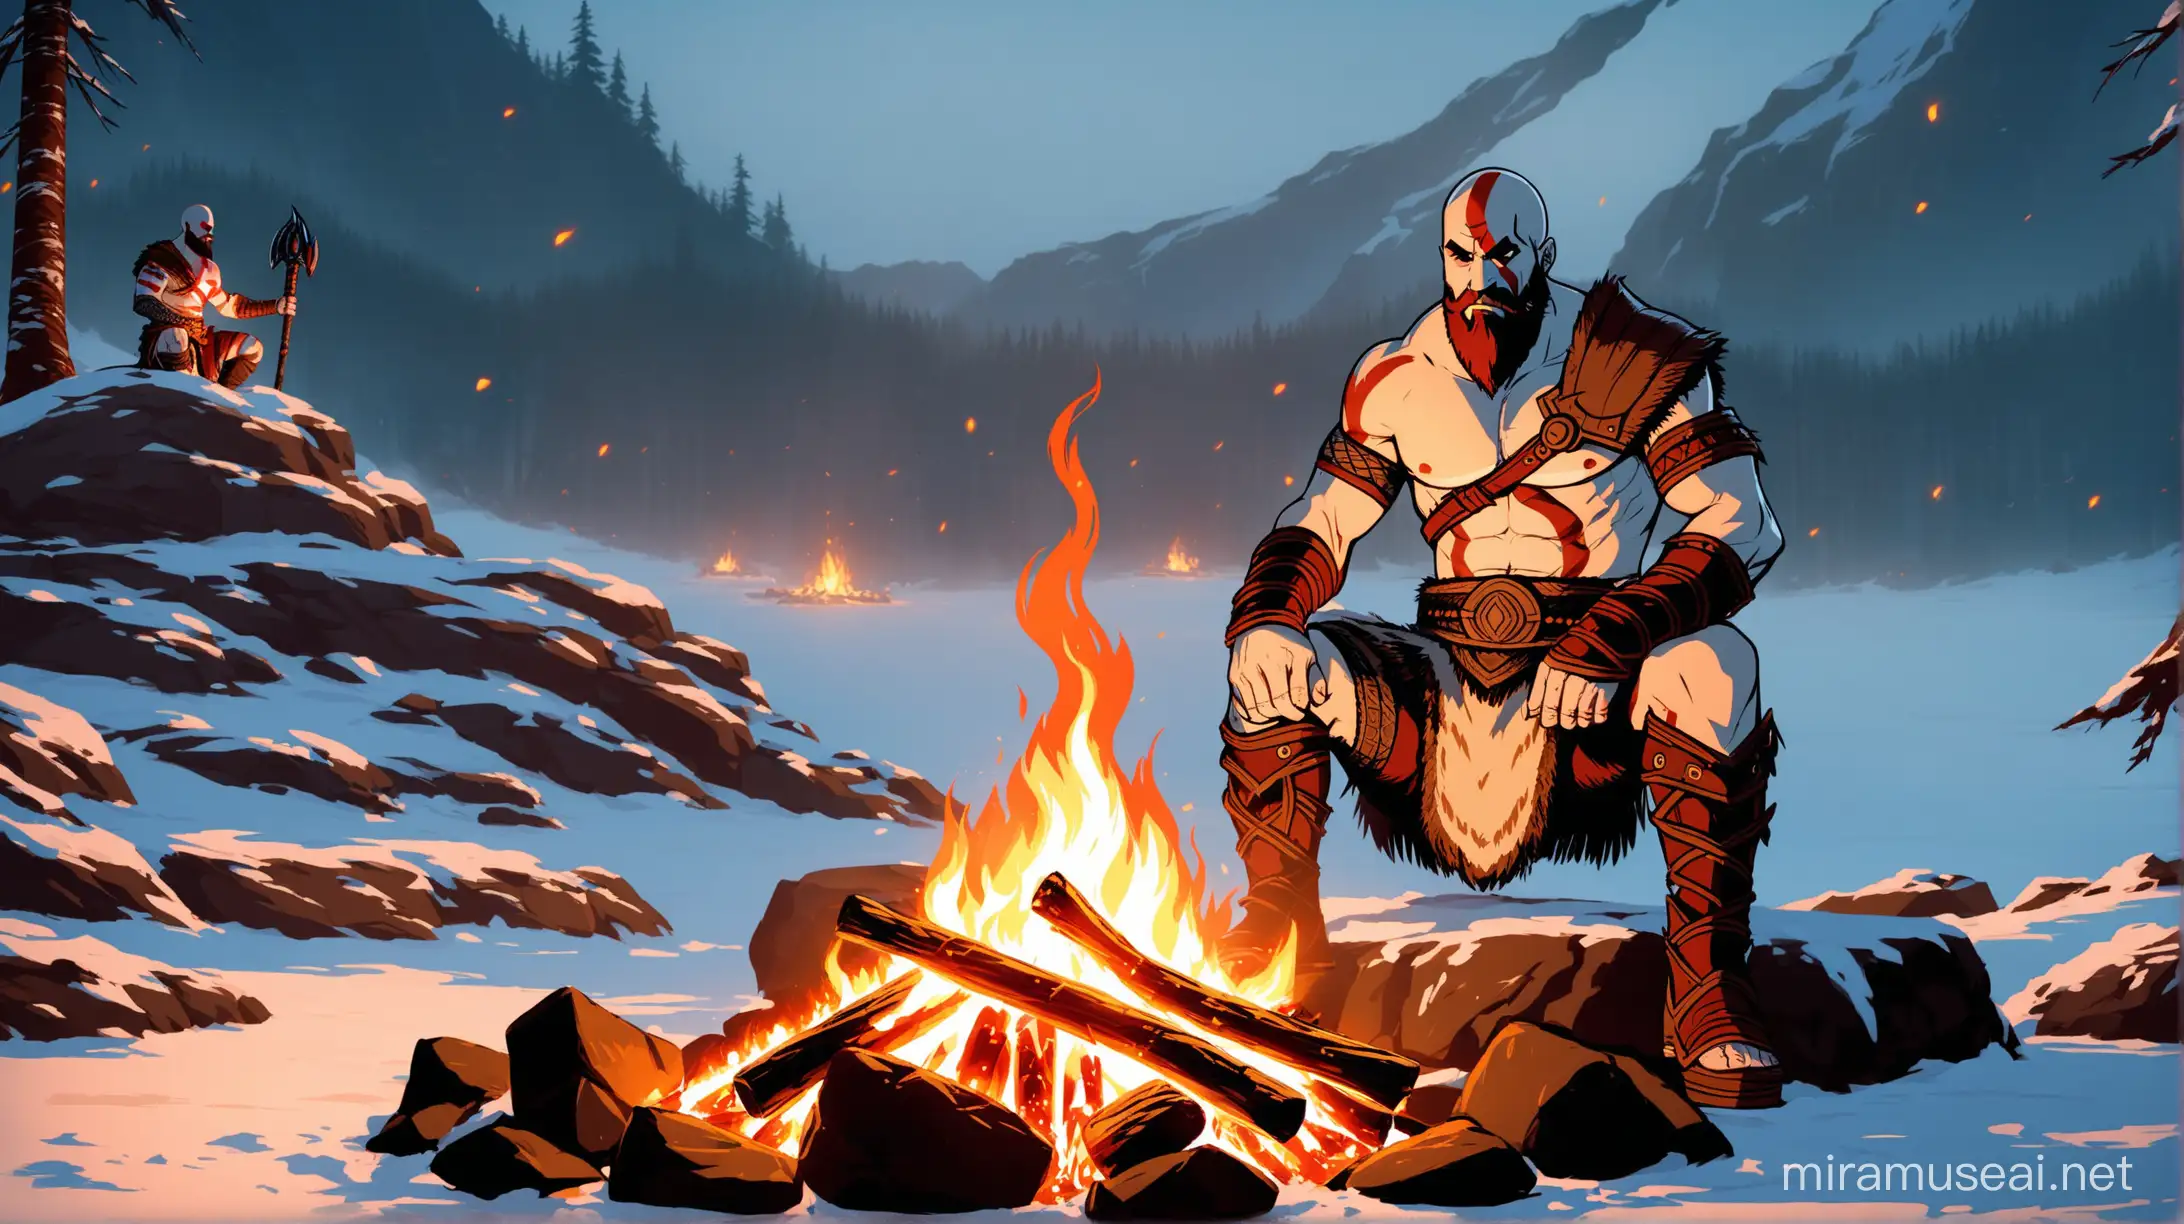 Kratos Sitting by Campfire in God of War Ragnarok Scene